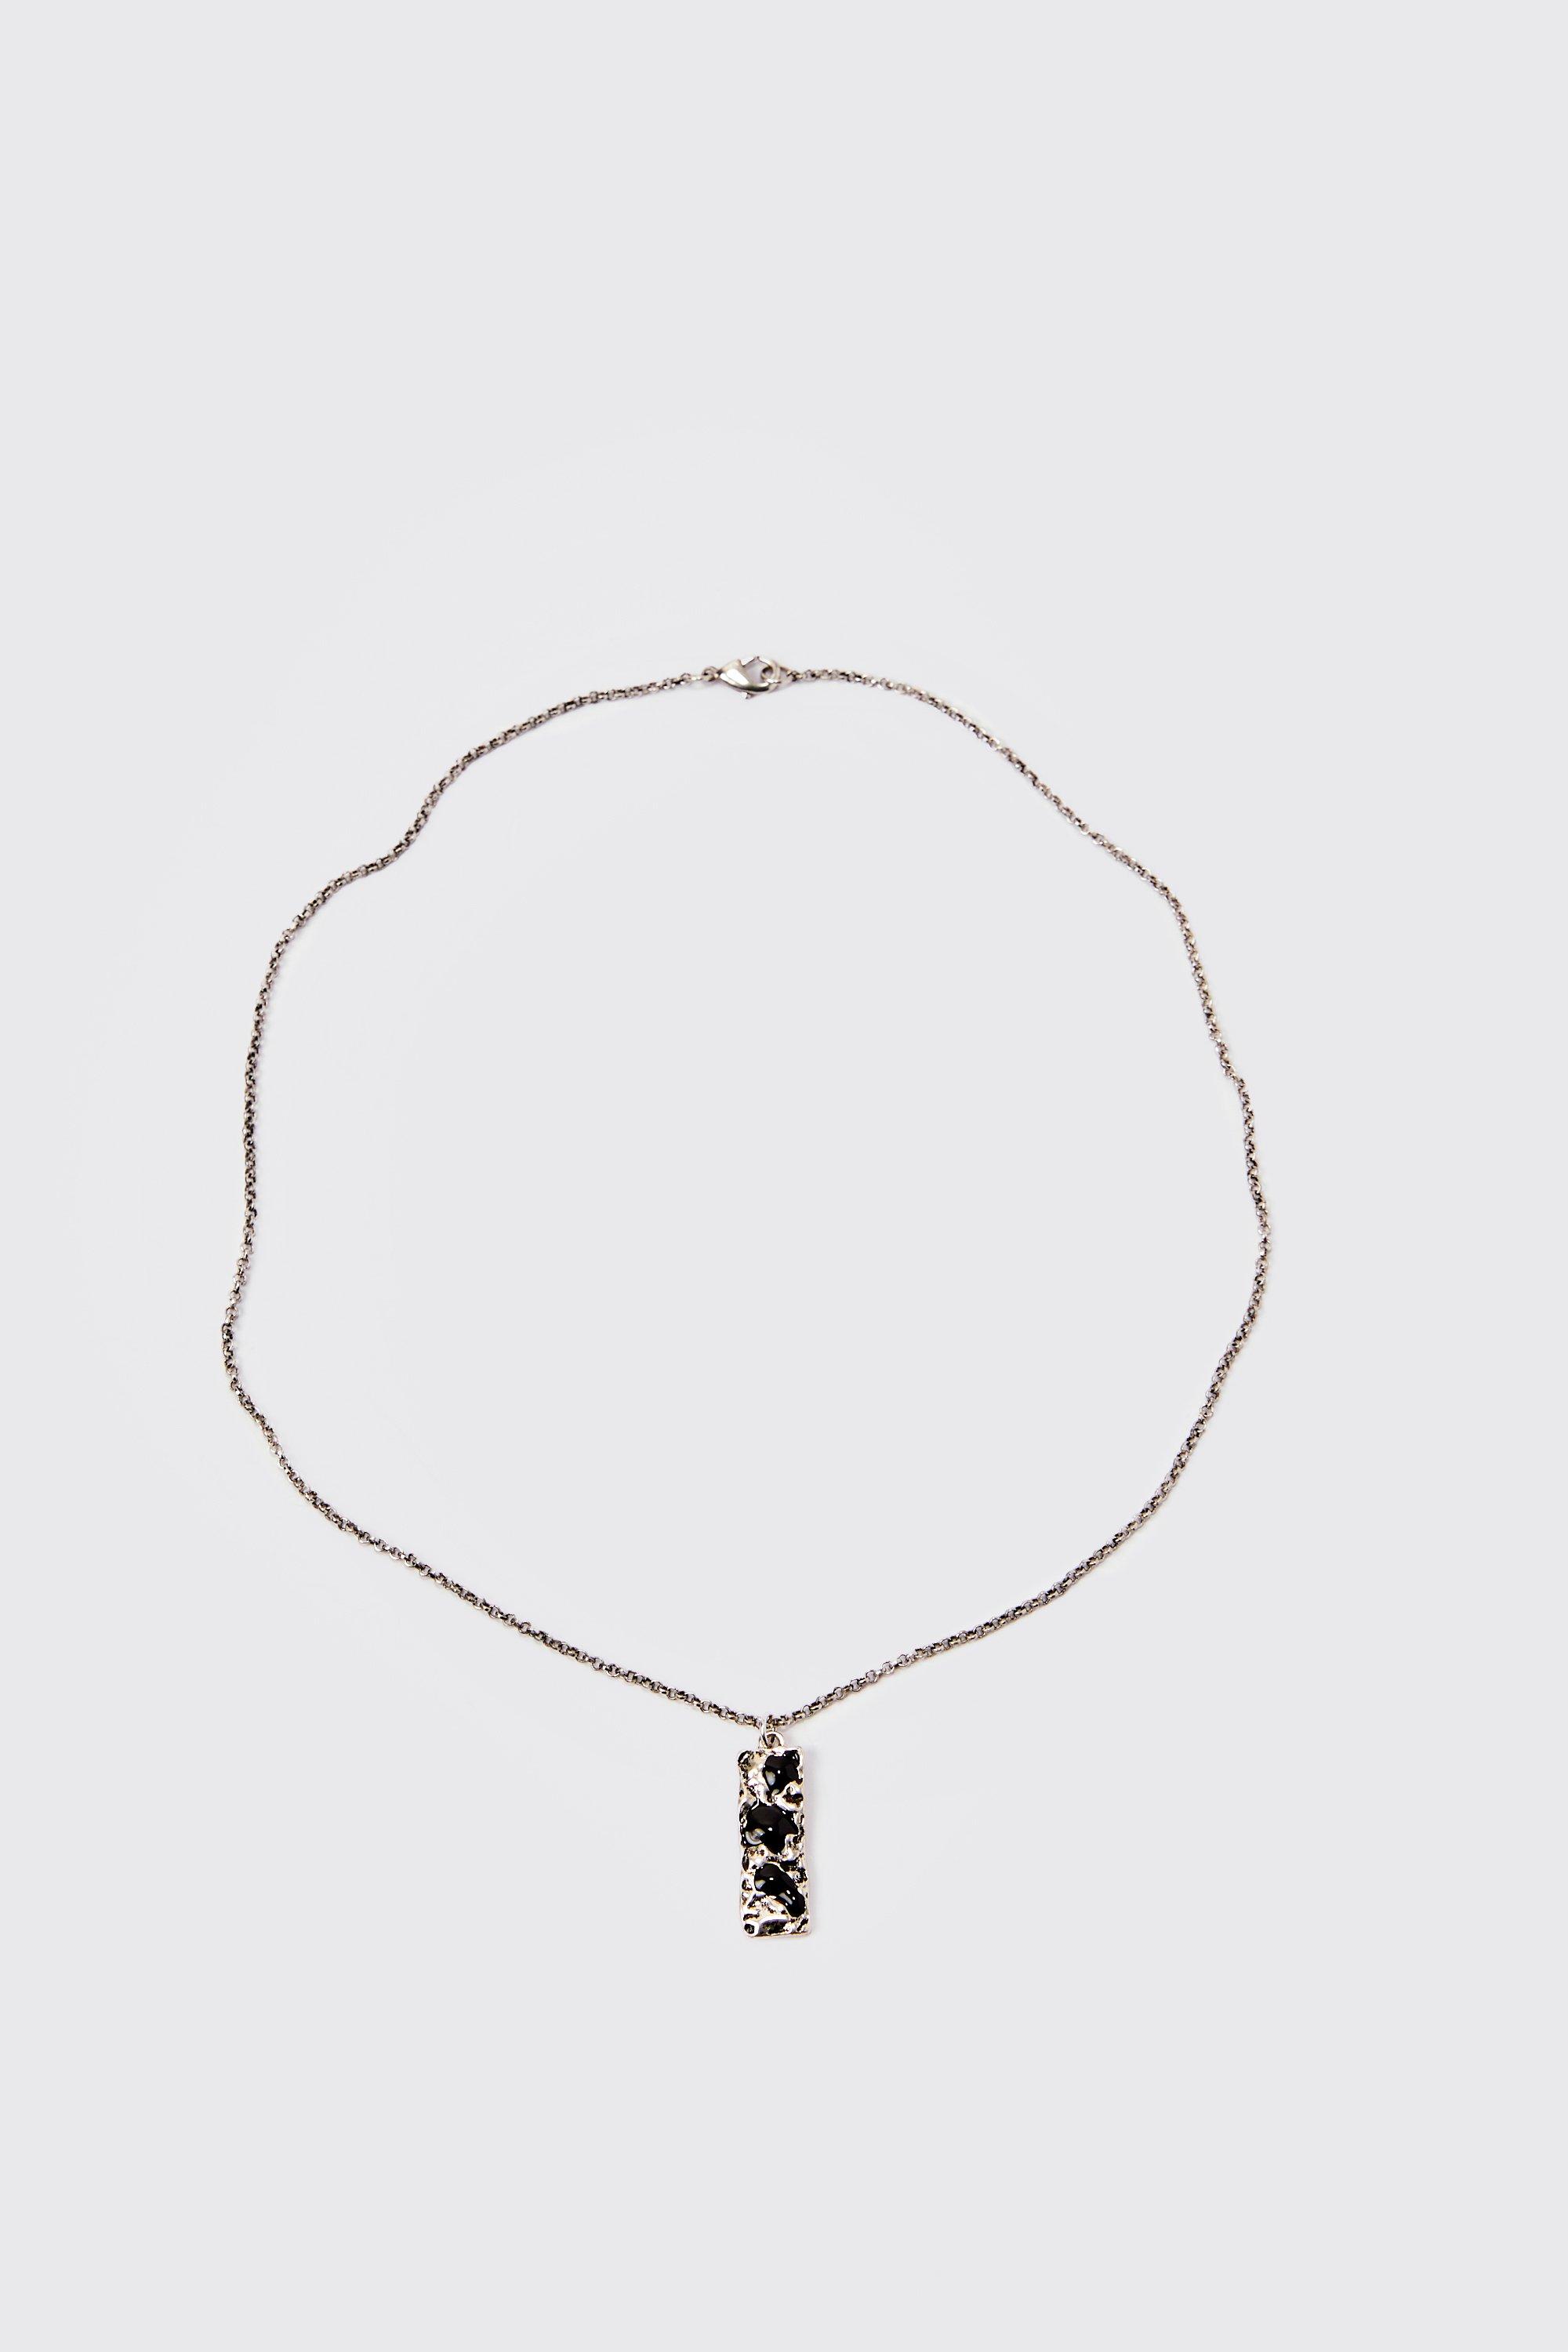 collier à pendentif abstrait homme - argent - one size, argent